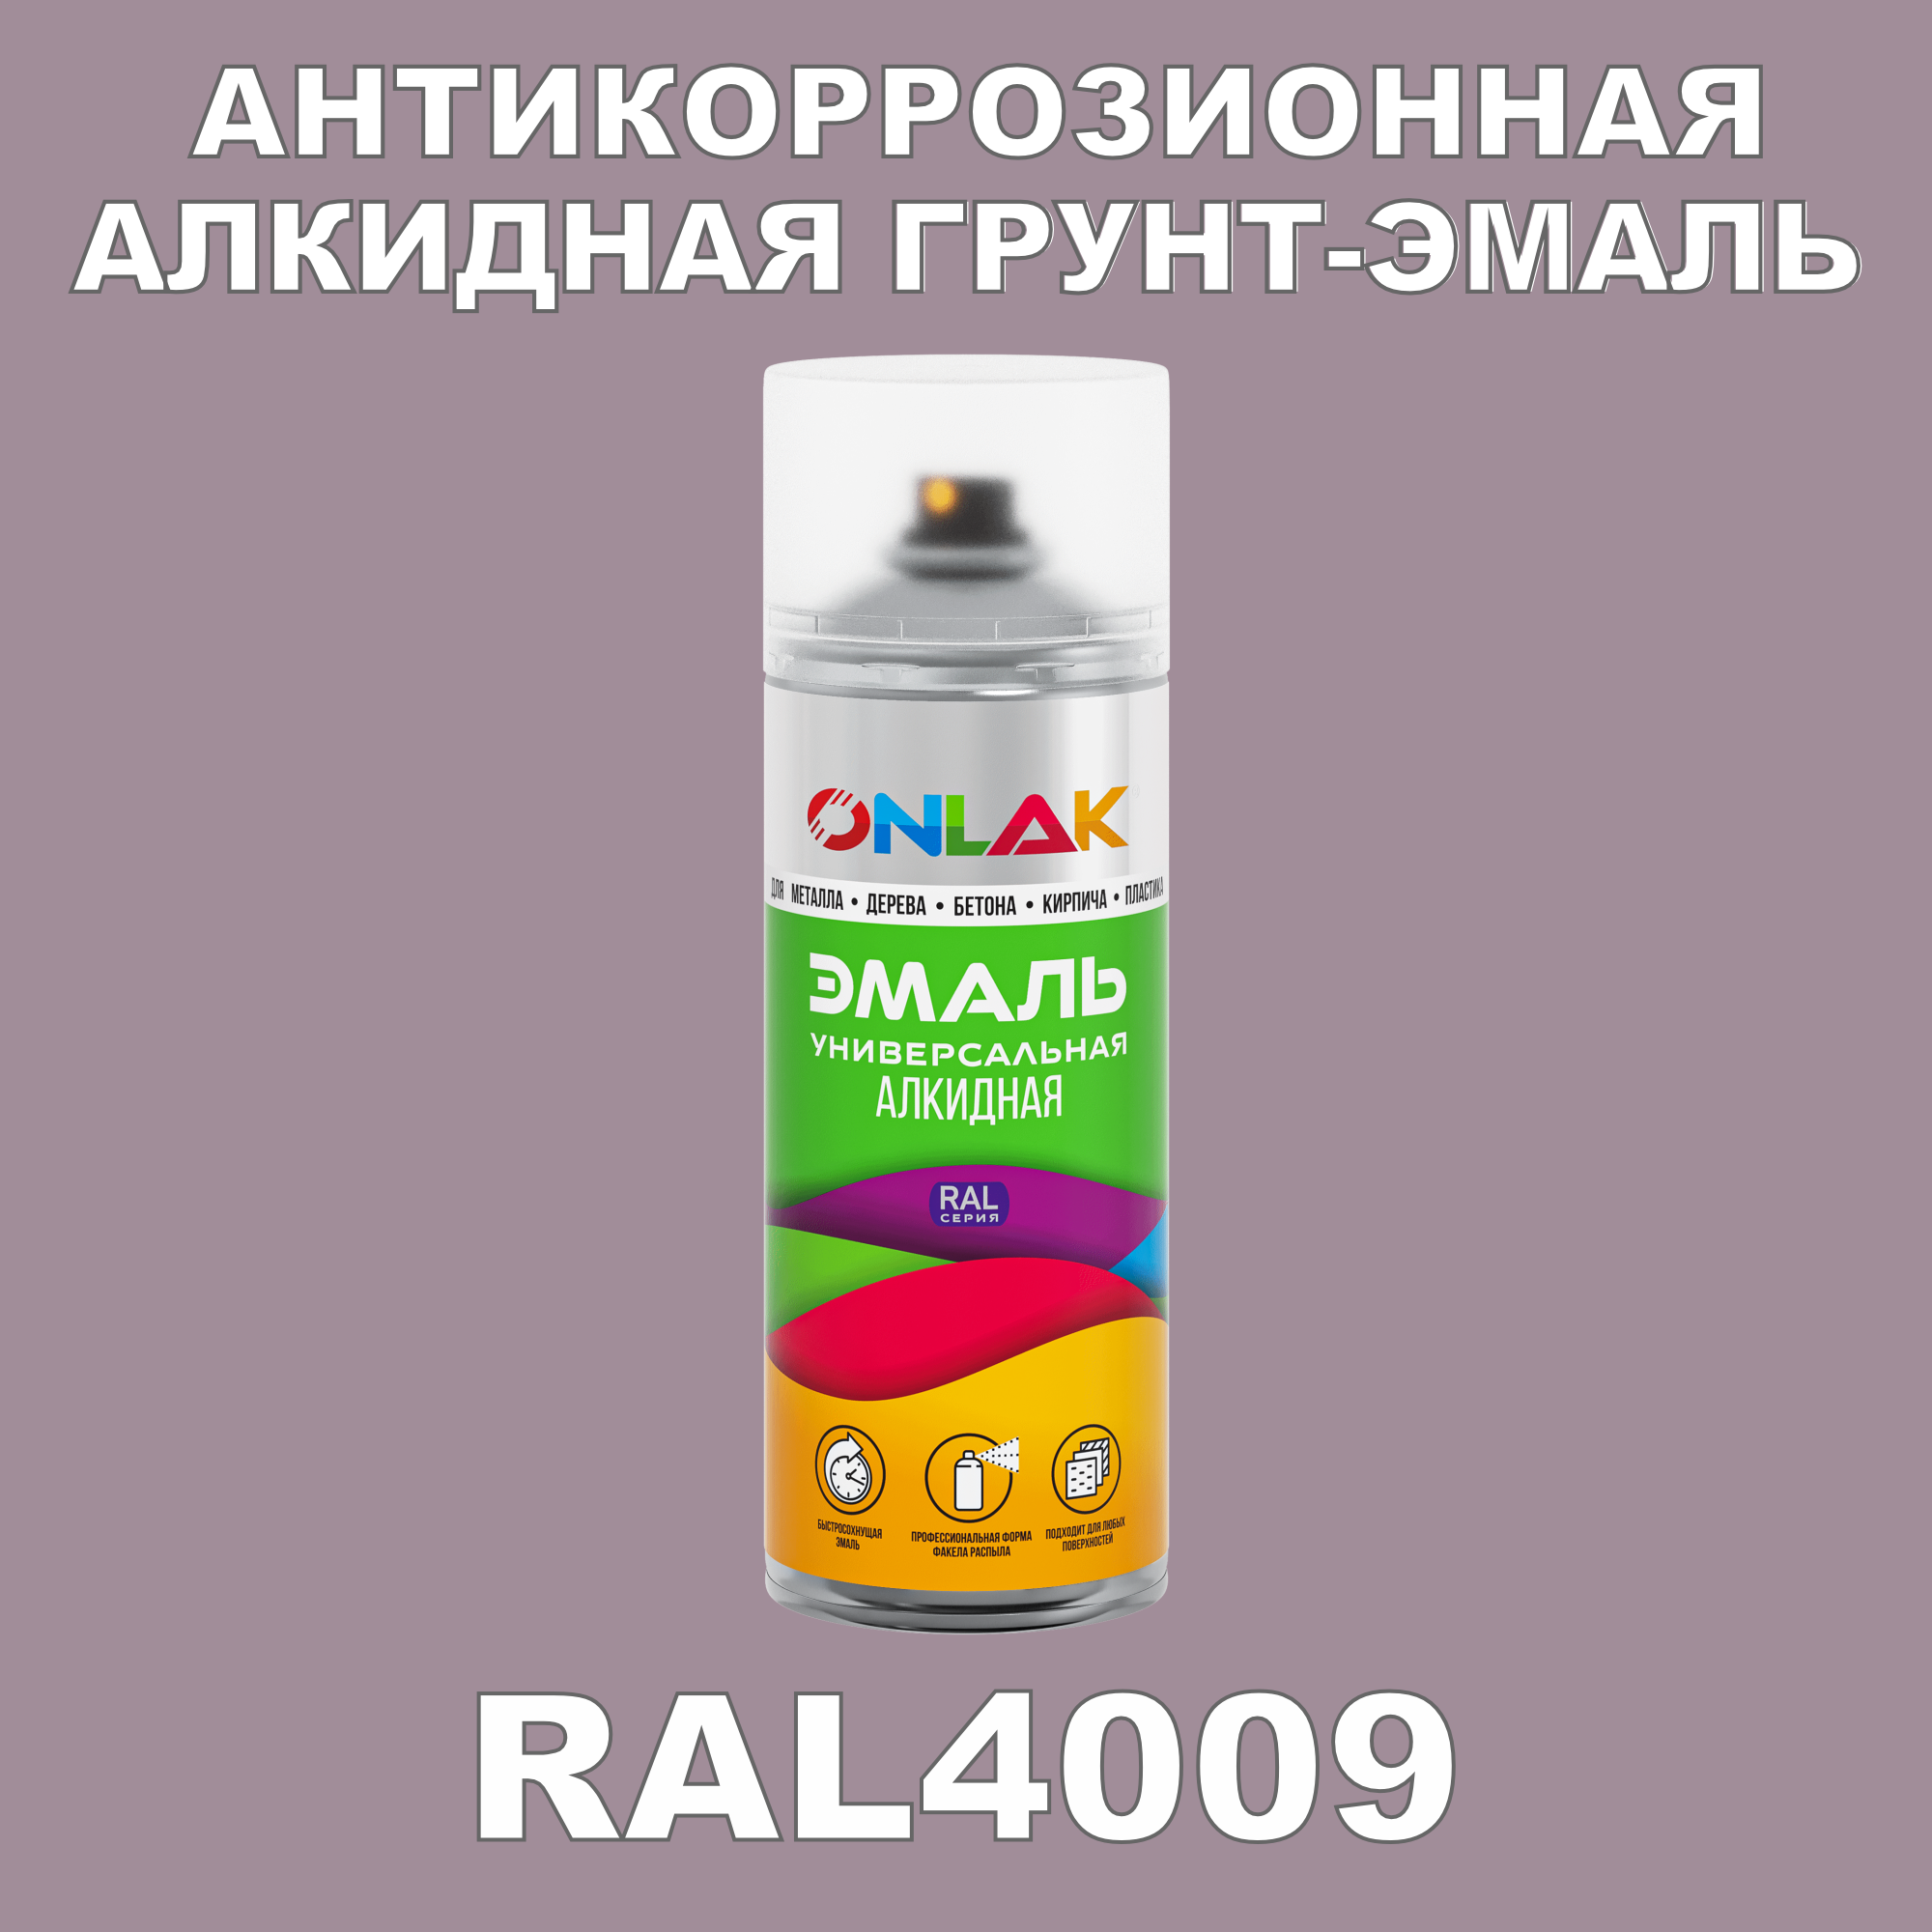 Антикоррозионная грунт-эмаль ONLAK RAL 4009,фиолетовый,593 мл artuniq color violet цветной грунт для аквариума фиолетовый 9 кг